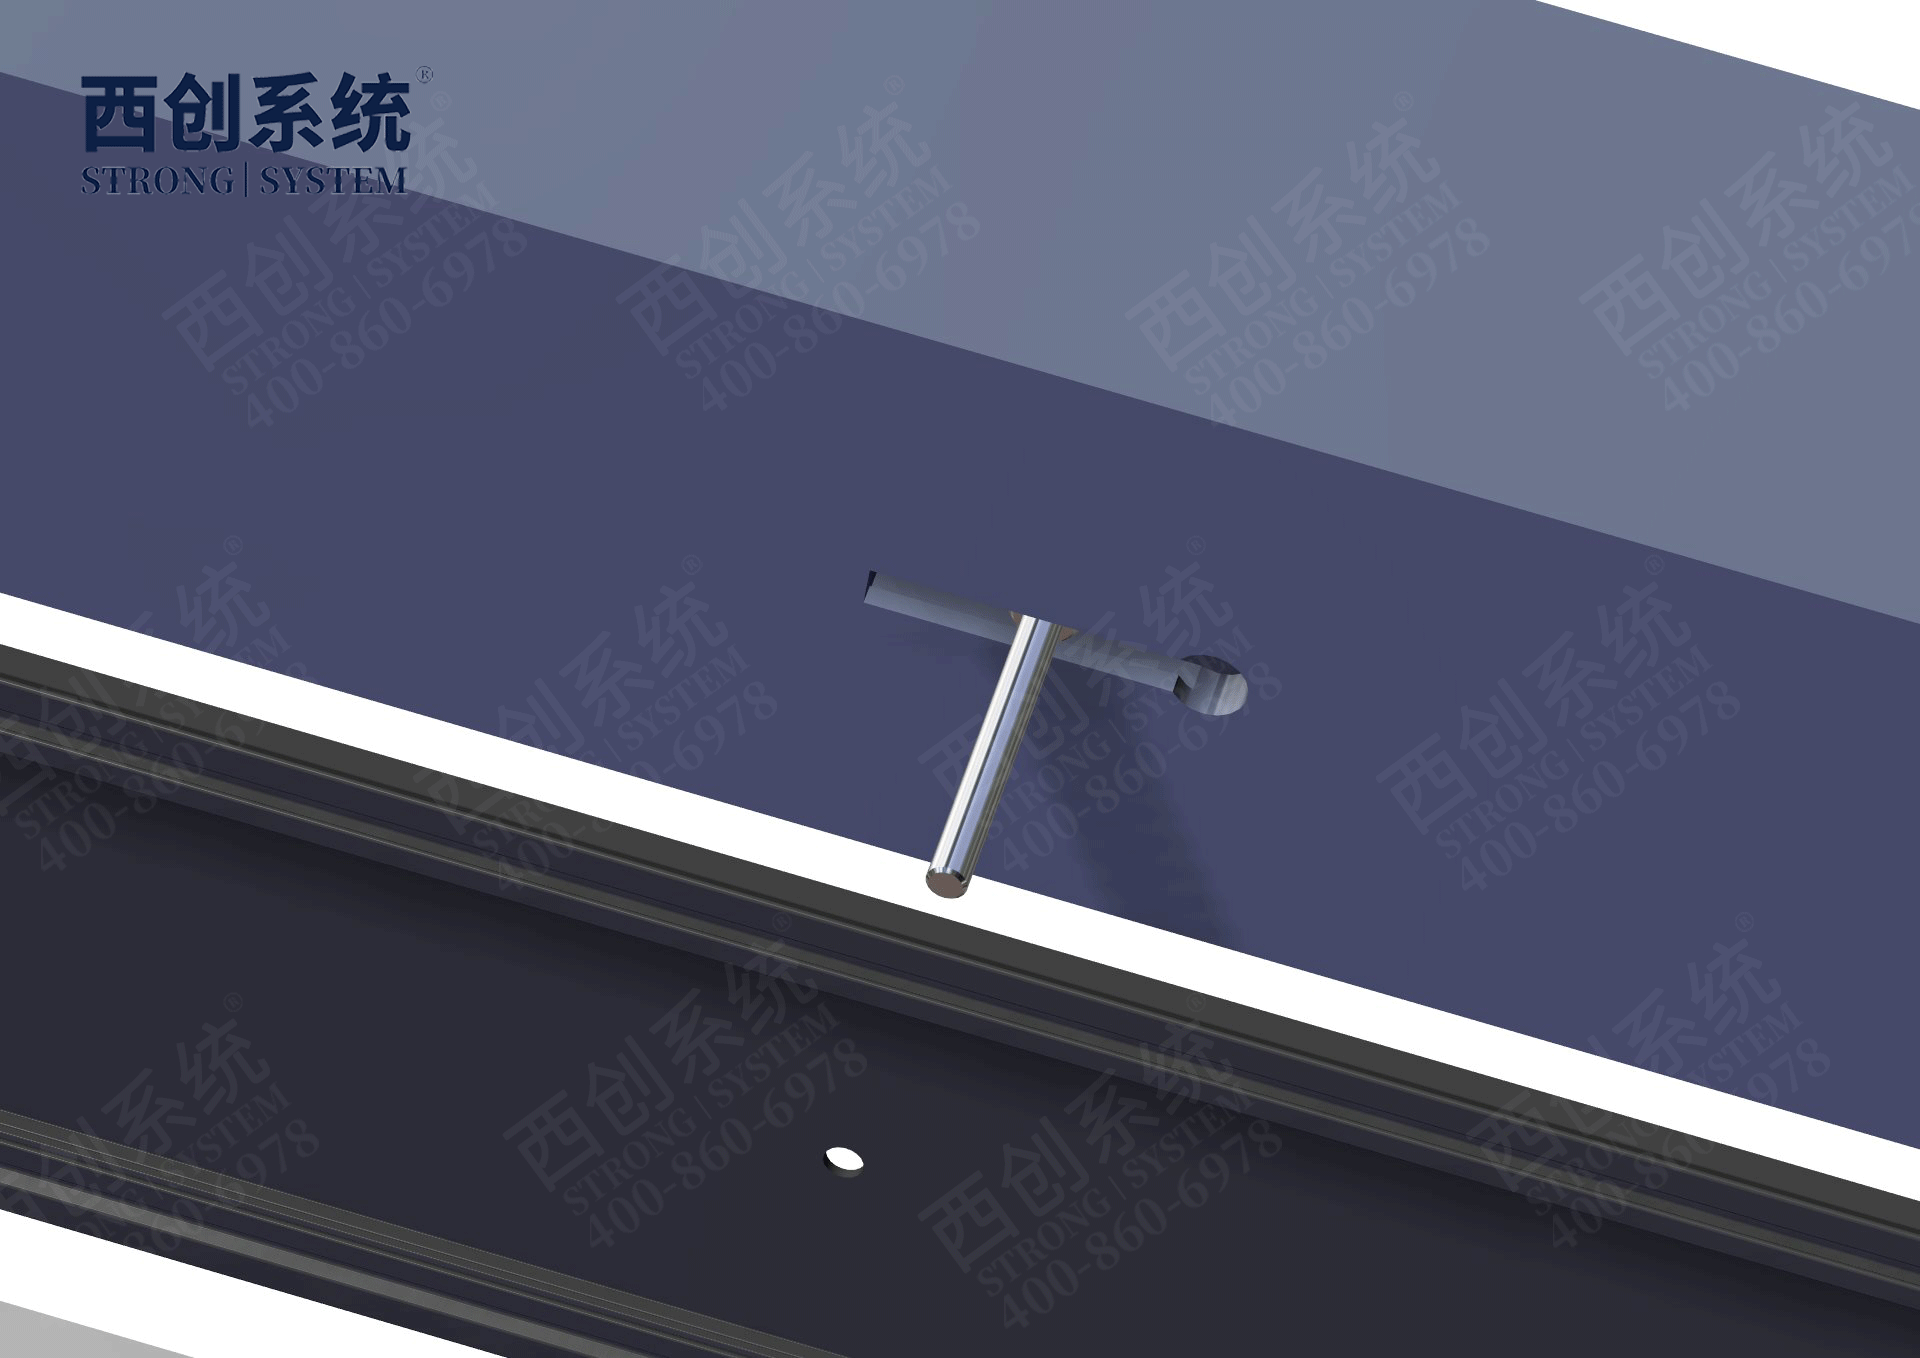 专利产品 | 上海嘉定项目铣卡槽精制钢玻璃幕墙系统 - 西创系统(图17)